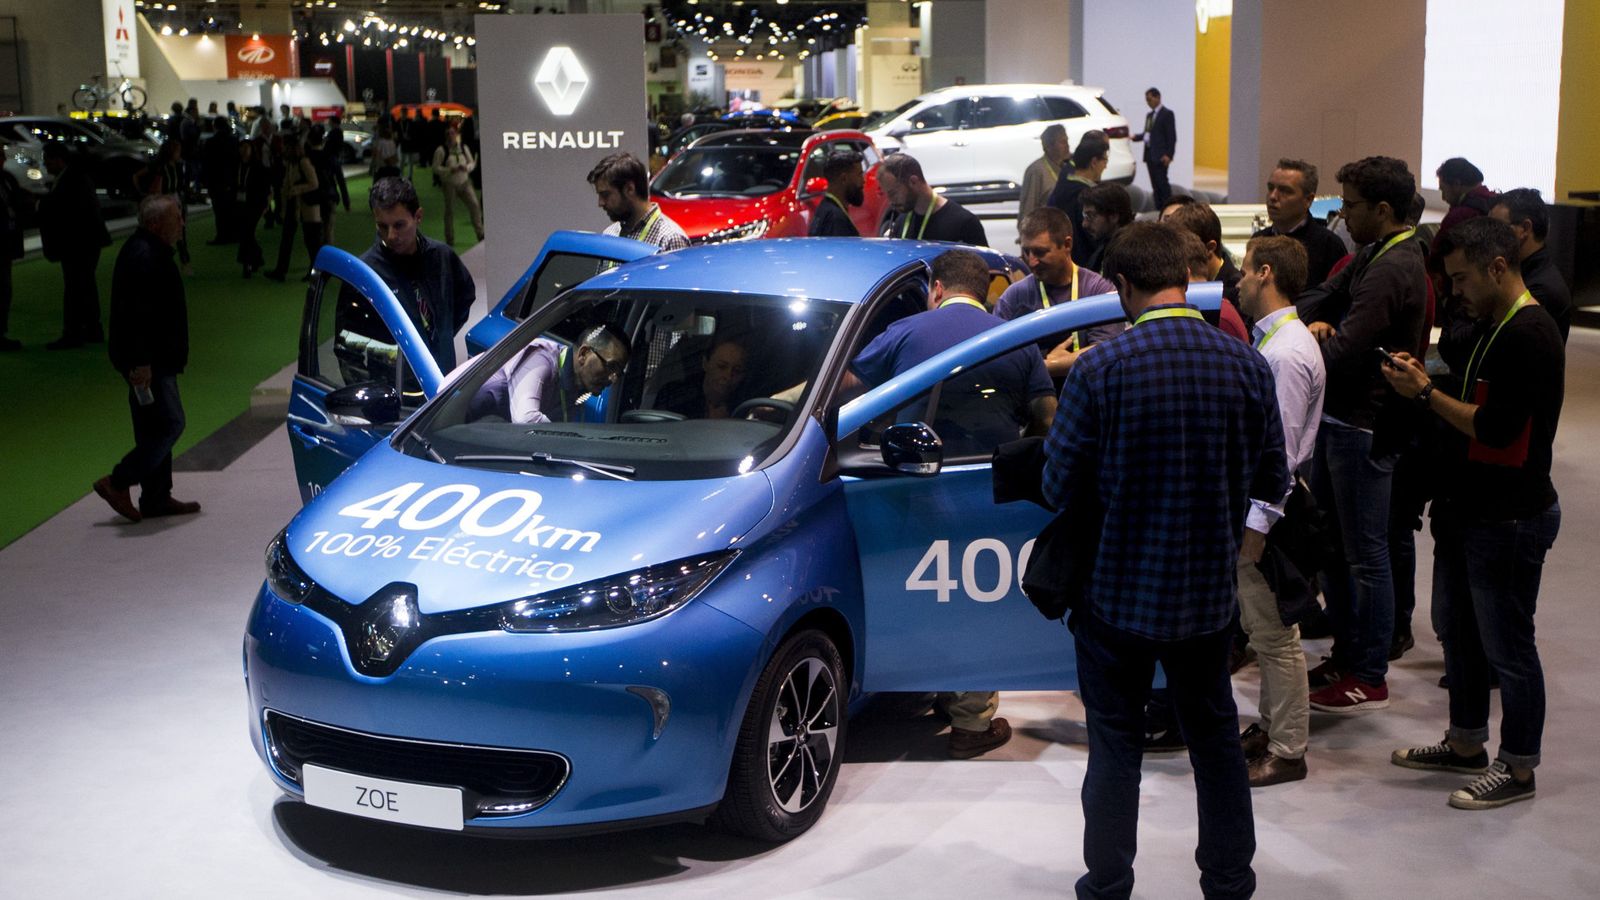 Foto: El nuevo Renault Zoe, uno de los modelos eléctricos. (EFE)